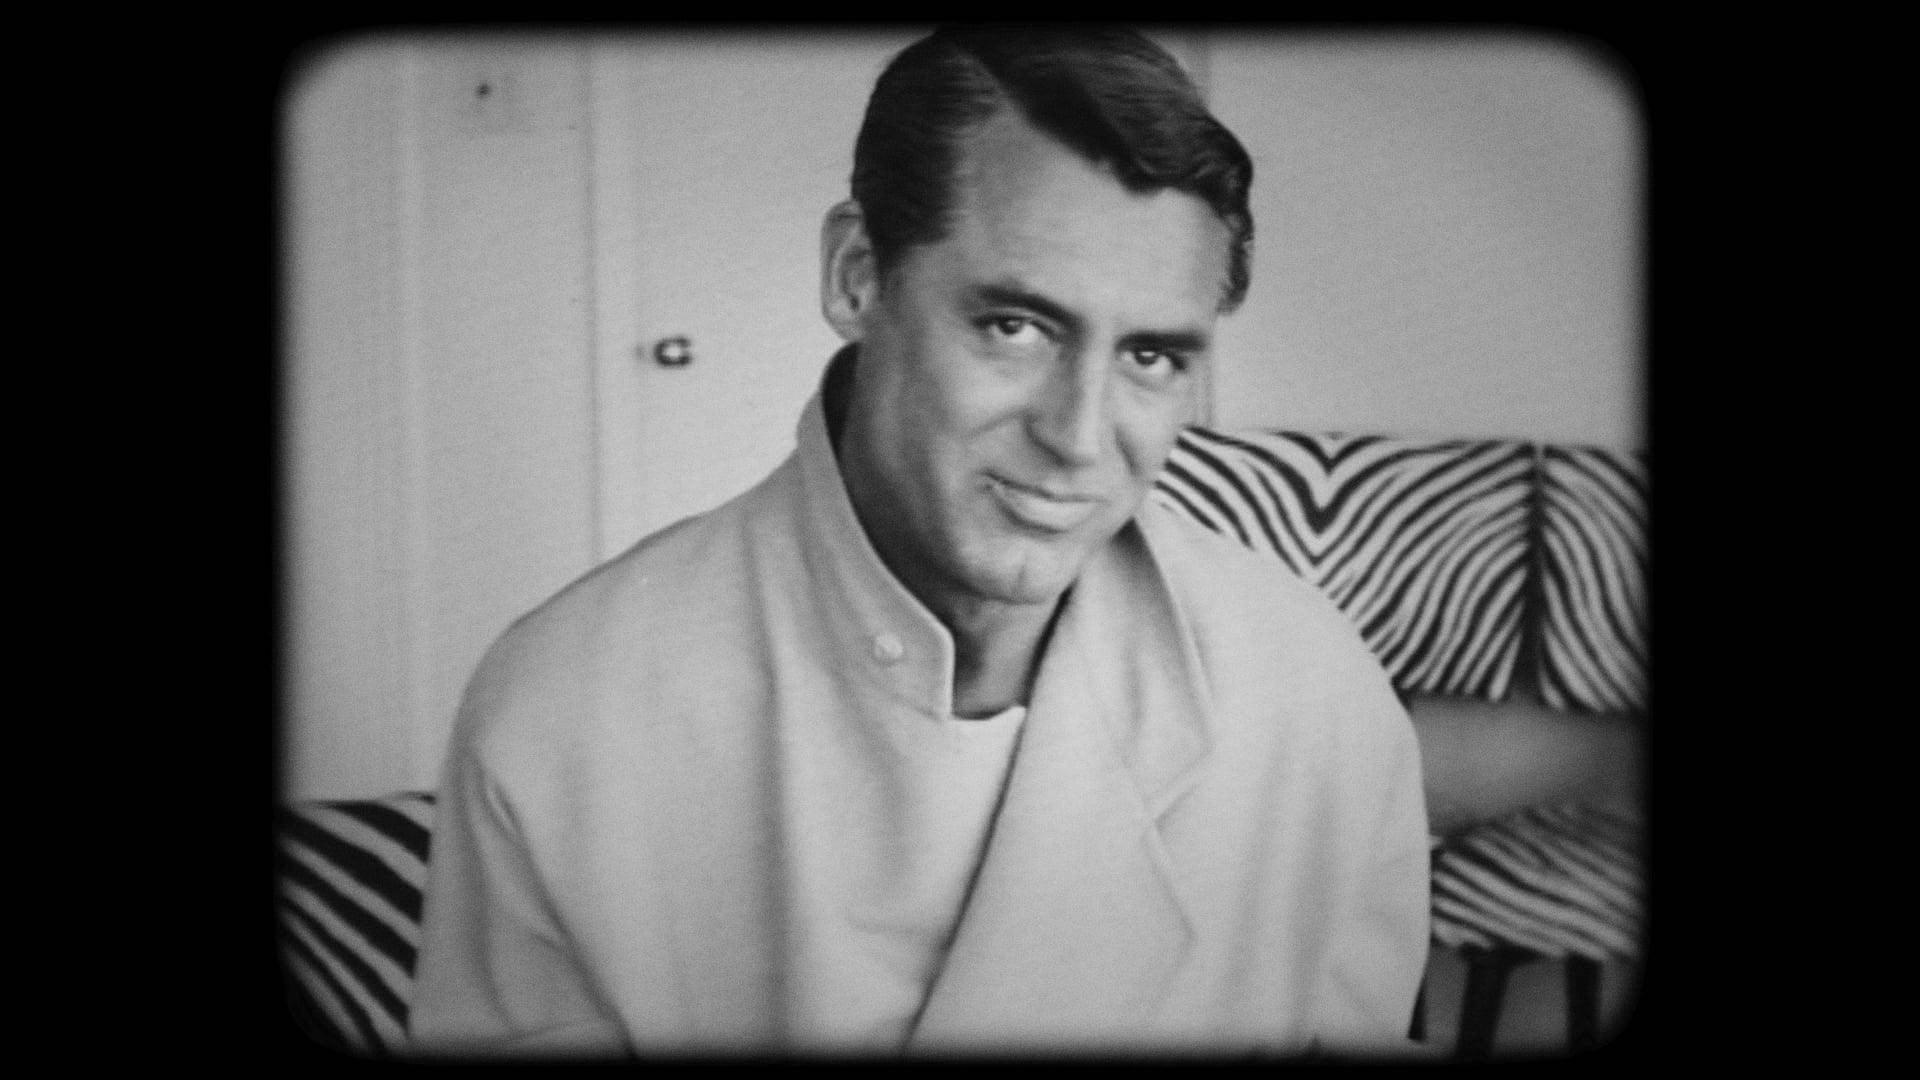 Cary Grant - Dietro lo specchio